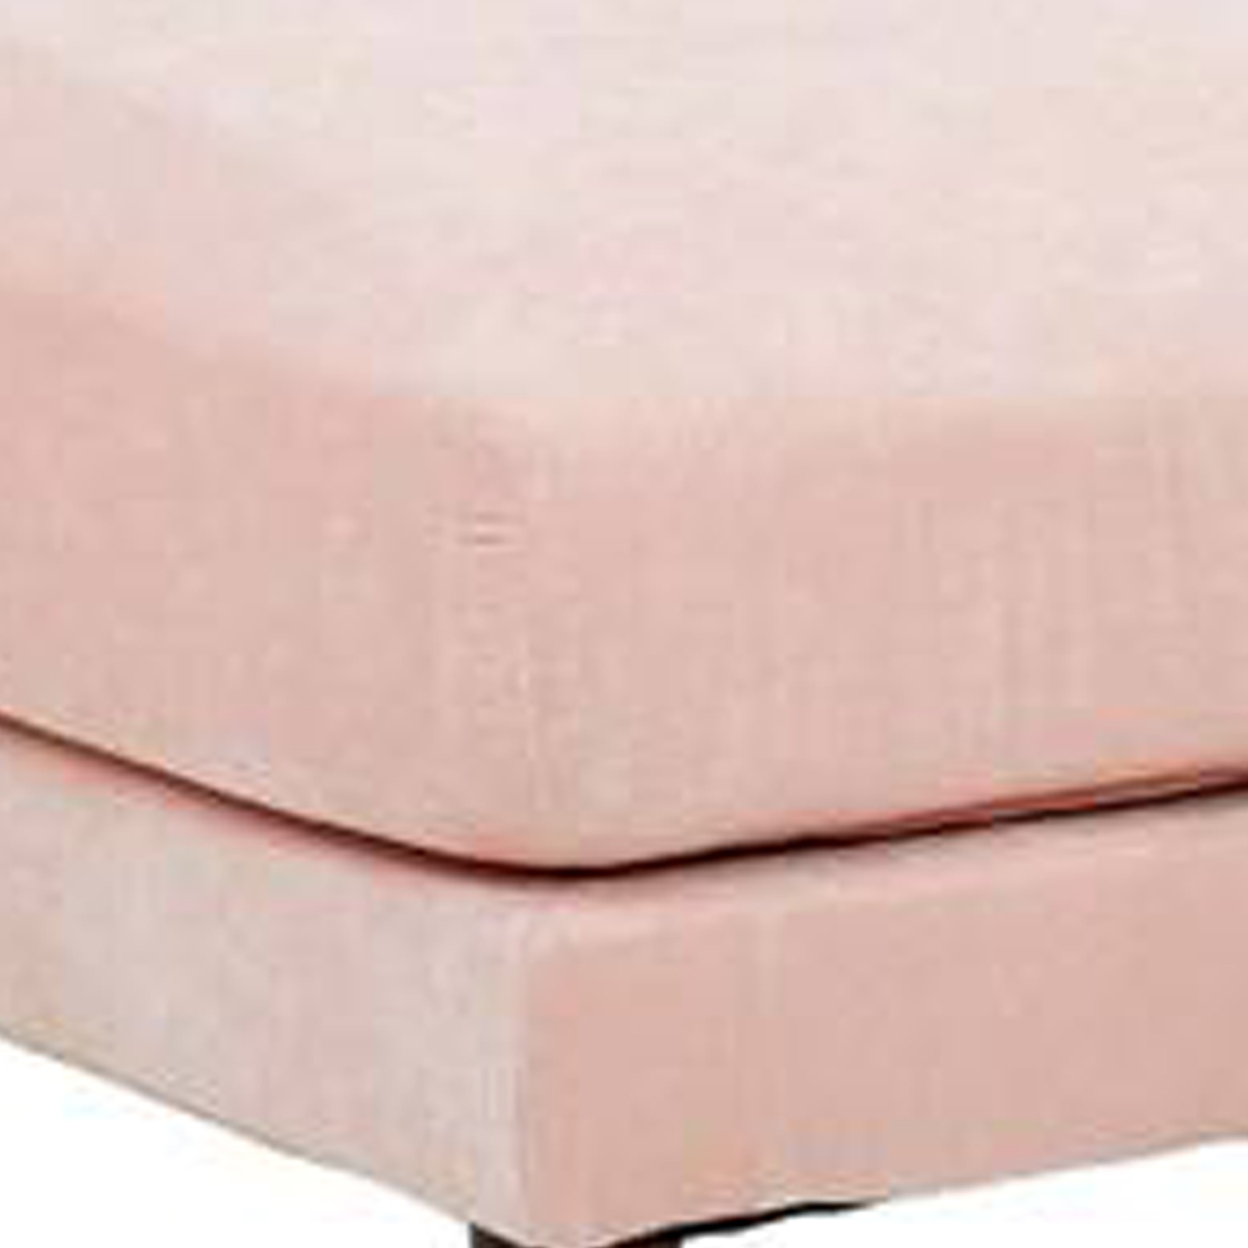 Rio 32 Inch Modular Ottoman, Box Cushion Seat, Wood Legs, Blush Pink- Saltoro Sherpi